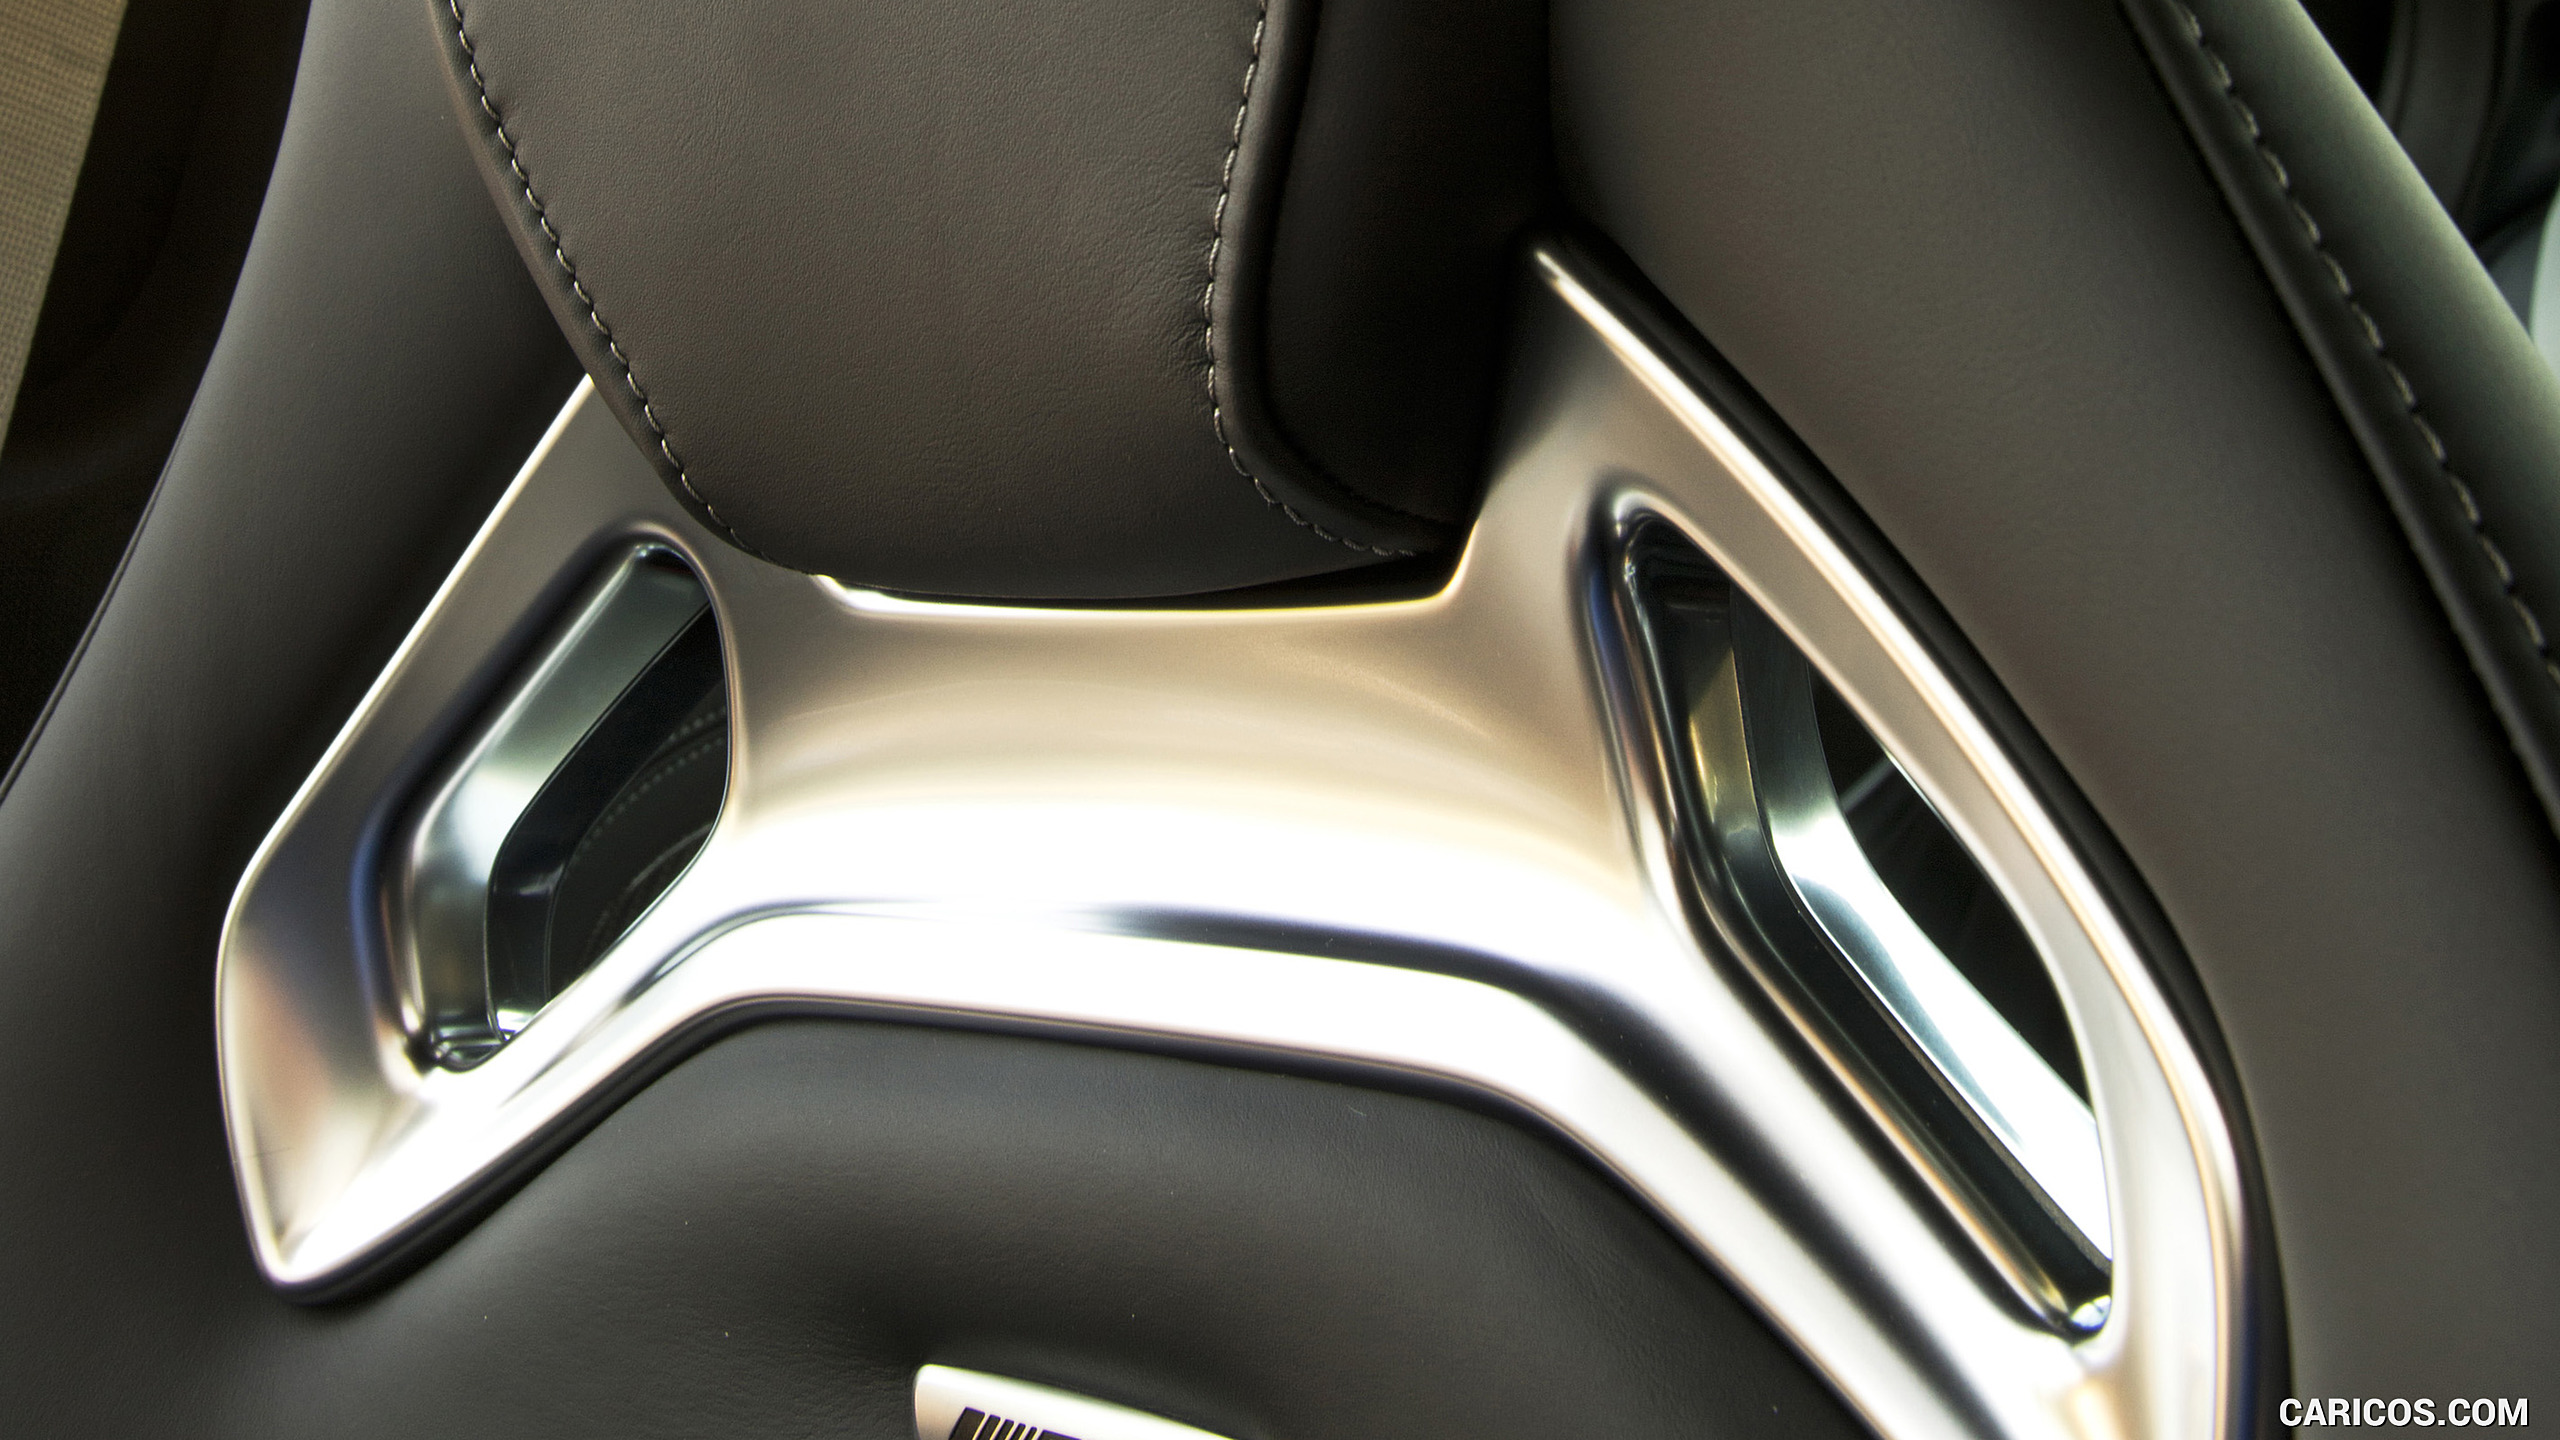 2018 Mercedes-AMG E63 S 4MATIC+ - Interior, Seats, #184 of 323